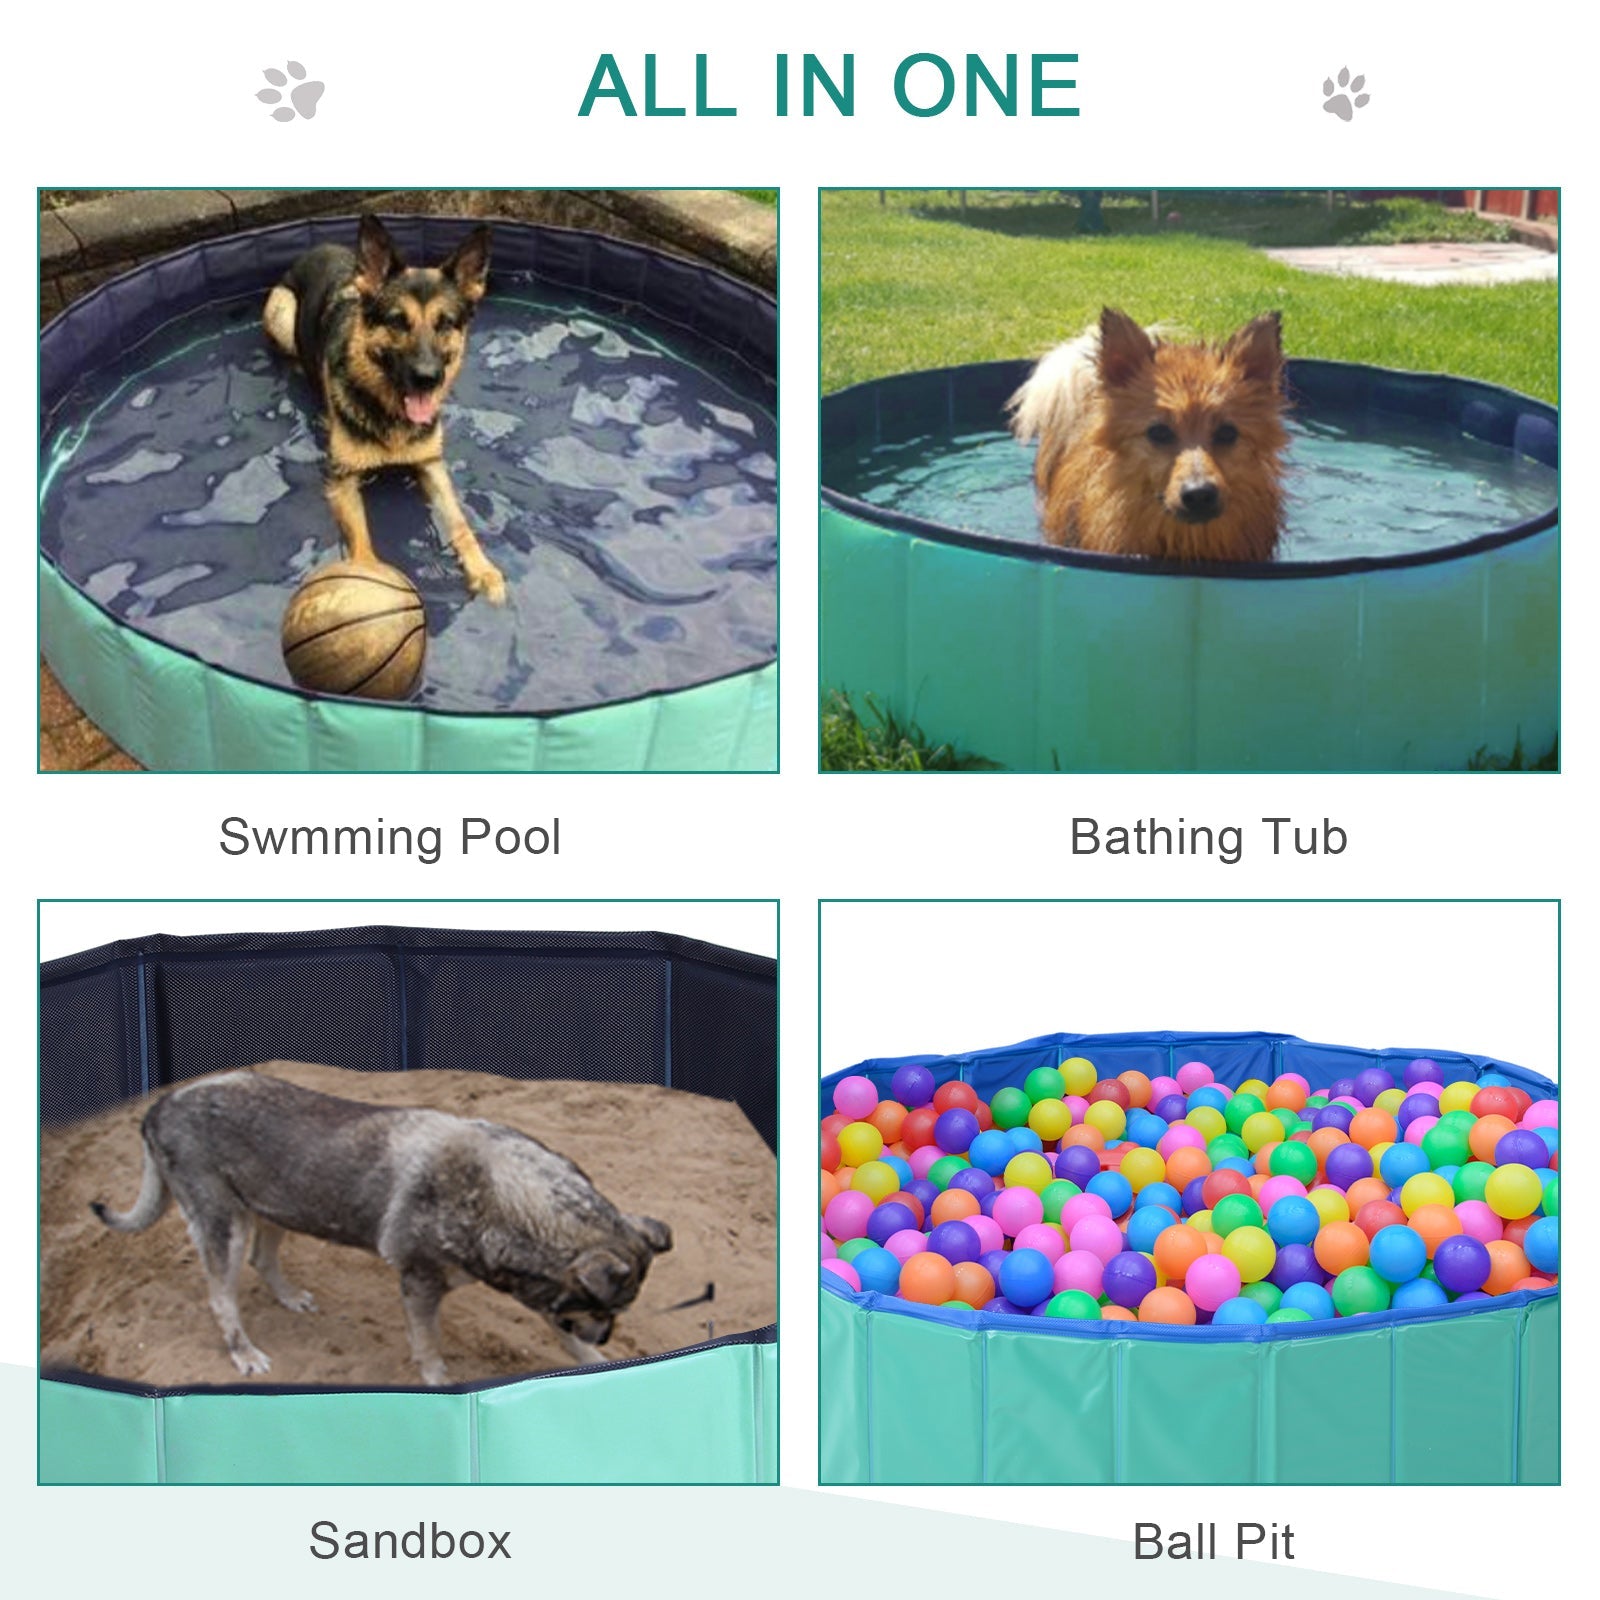 Φ63" Folding Dog Pool for Large dogs, Portable Pet Kiddie Swimming Pool, Outdoor/Indoor Puppy Bath Tub with Nonslip Bottom for Dogs &; Cats, Green at Gallery Canada